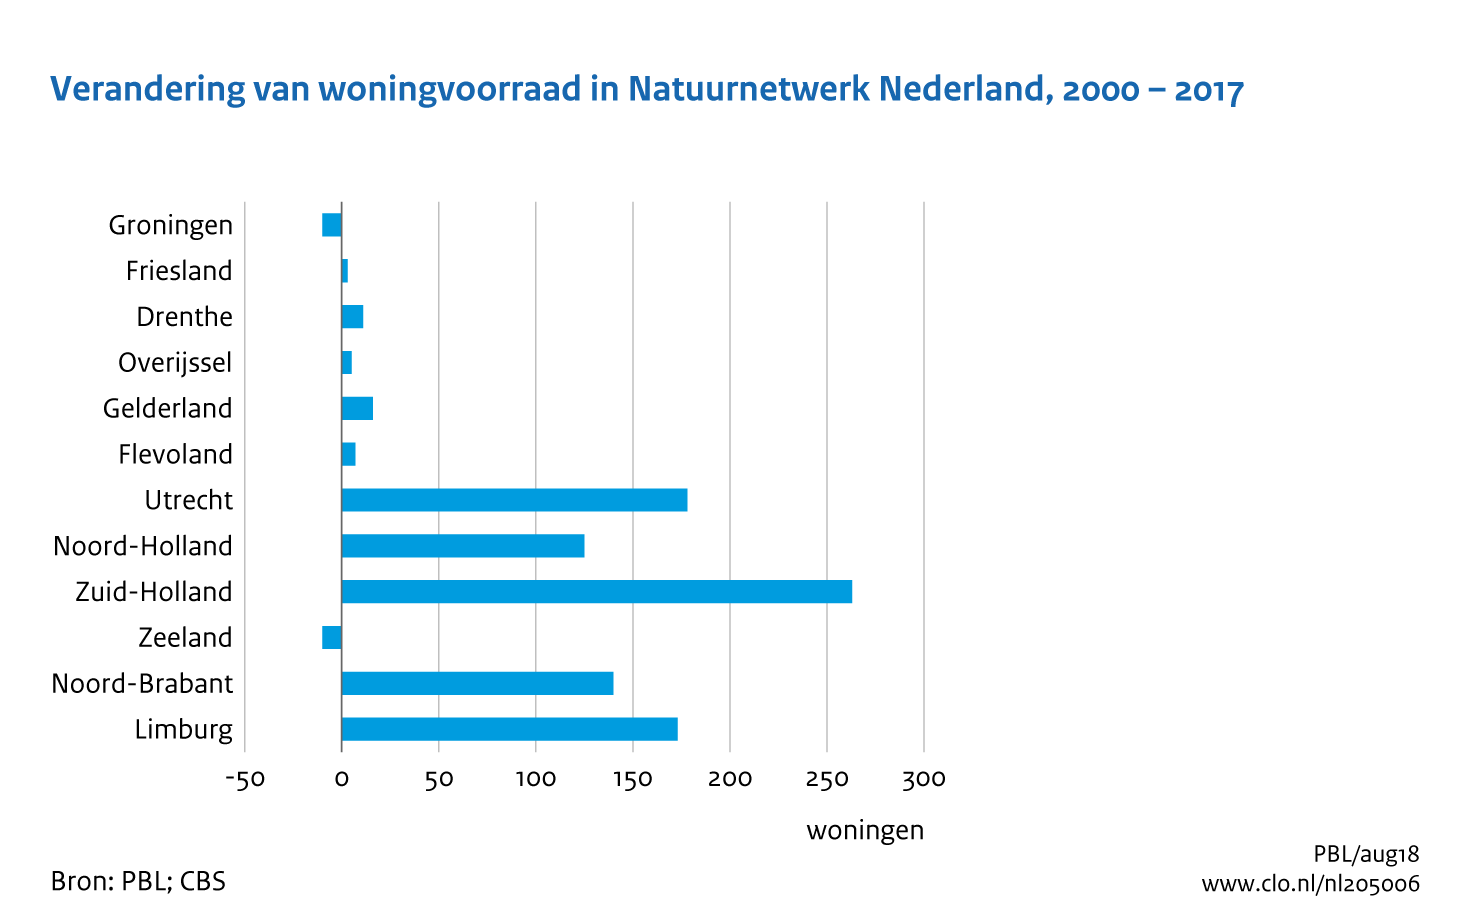 Figuur Verandering in woningvoorraad in NNN, 2000-2017. In de rest van de tekst wordt deze figuur uitgebreider uitgelegd.